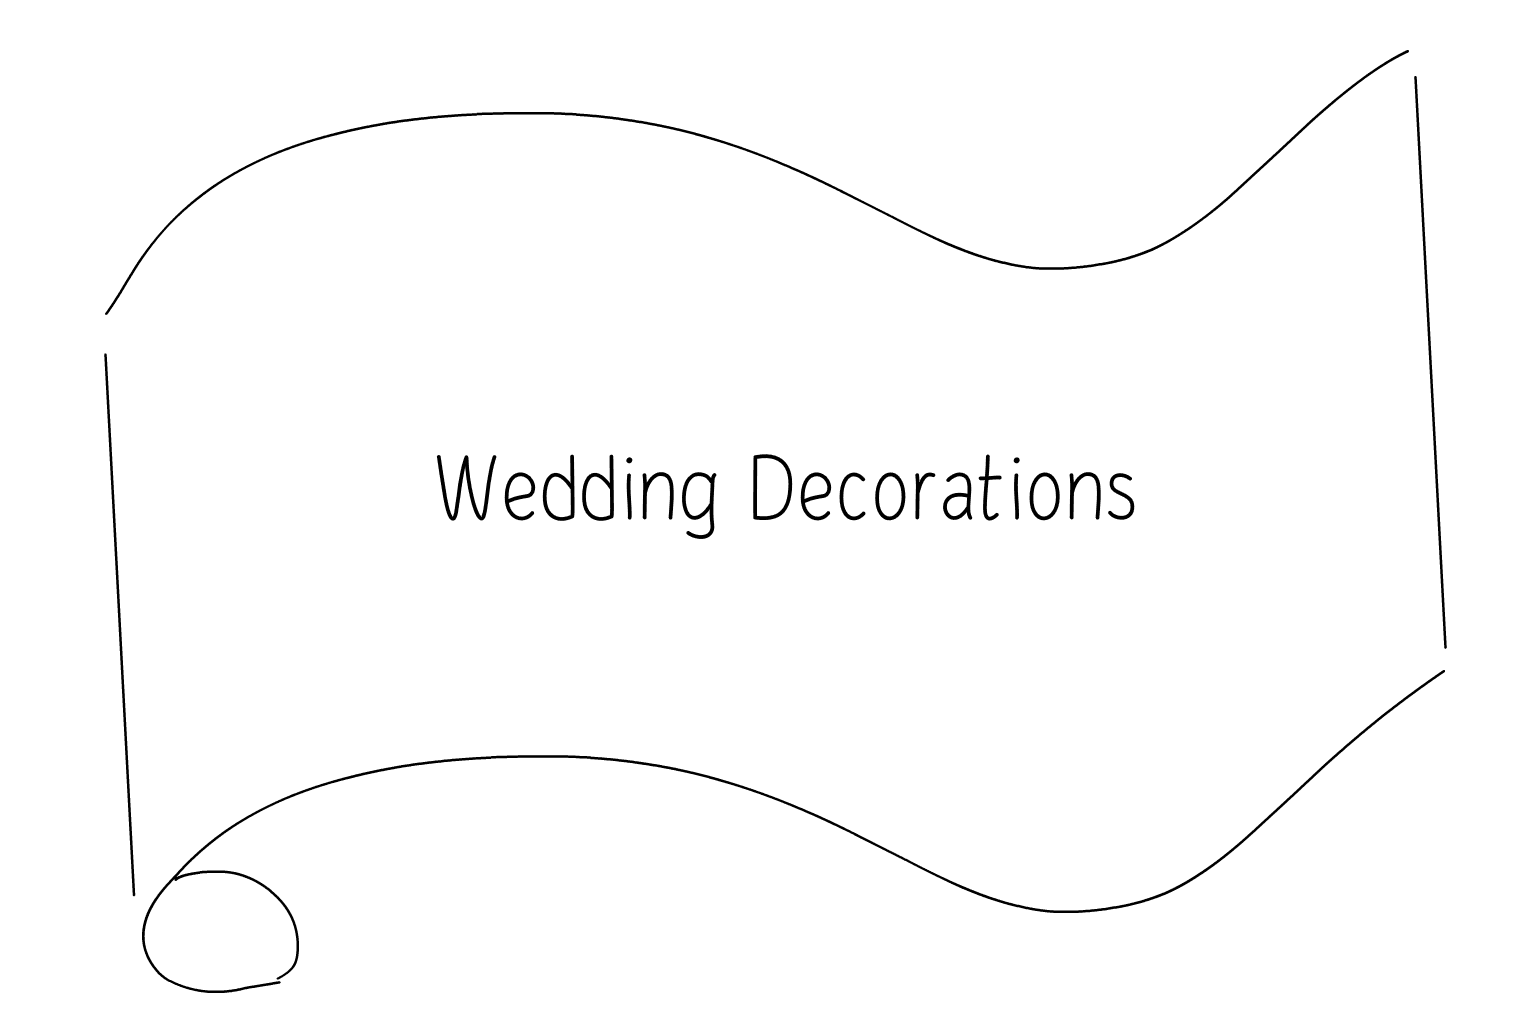 Ilustración de decoraciones de boda